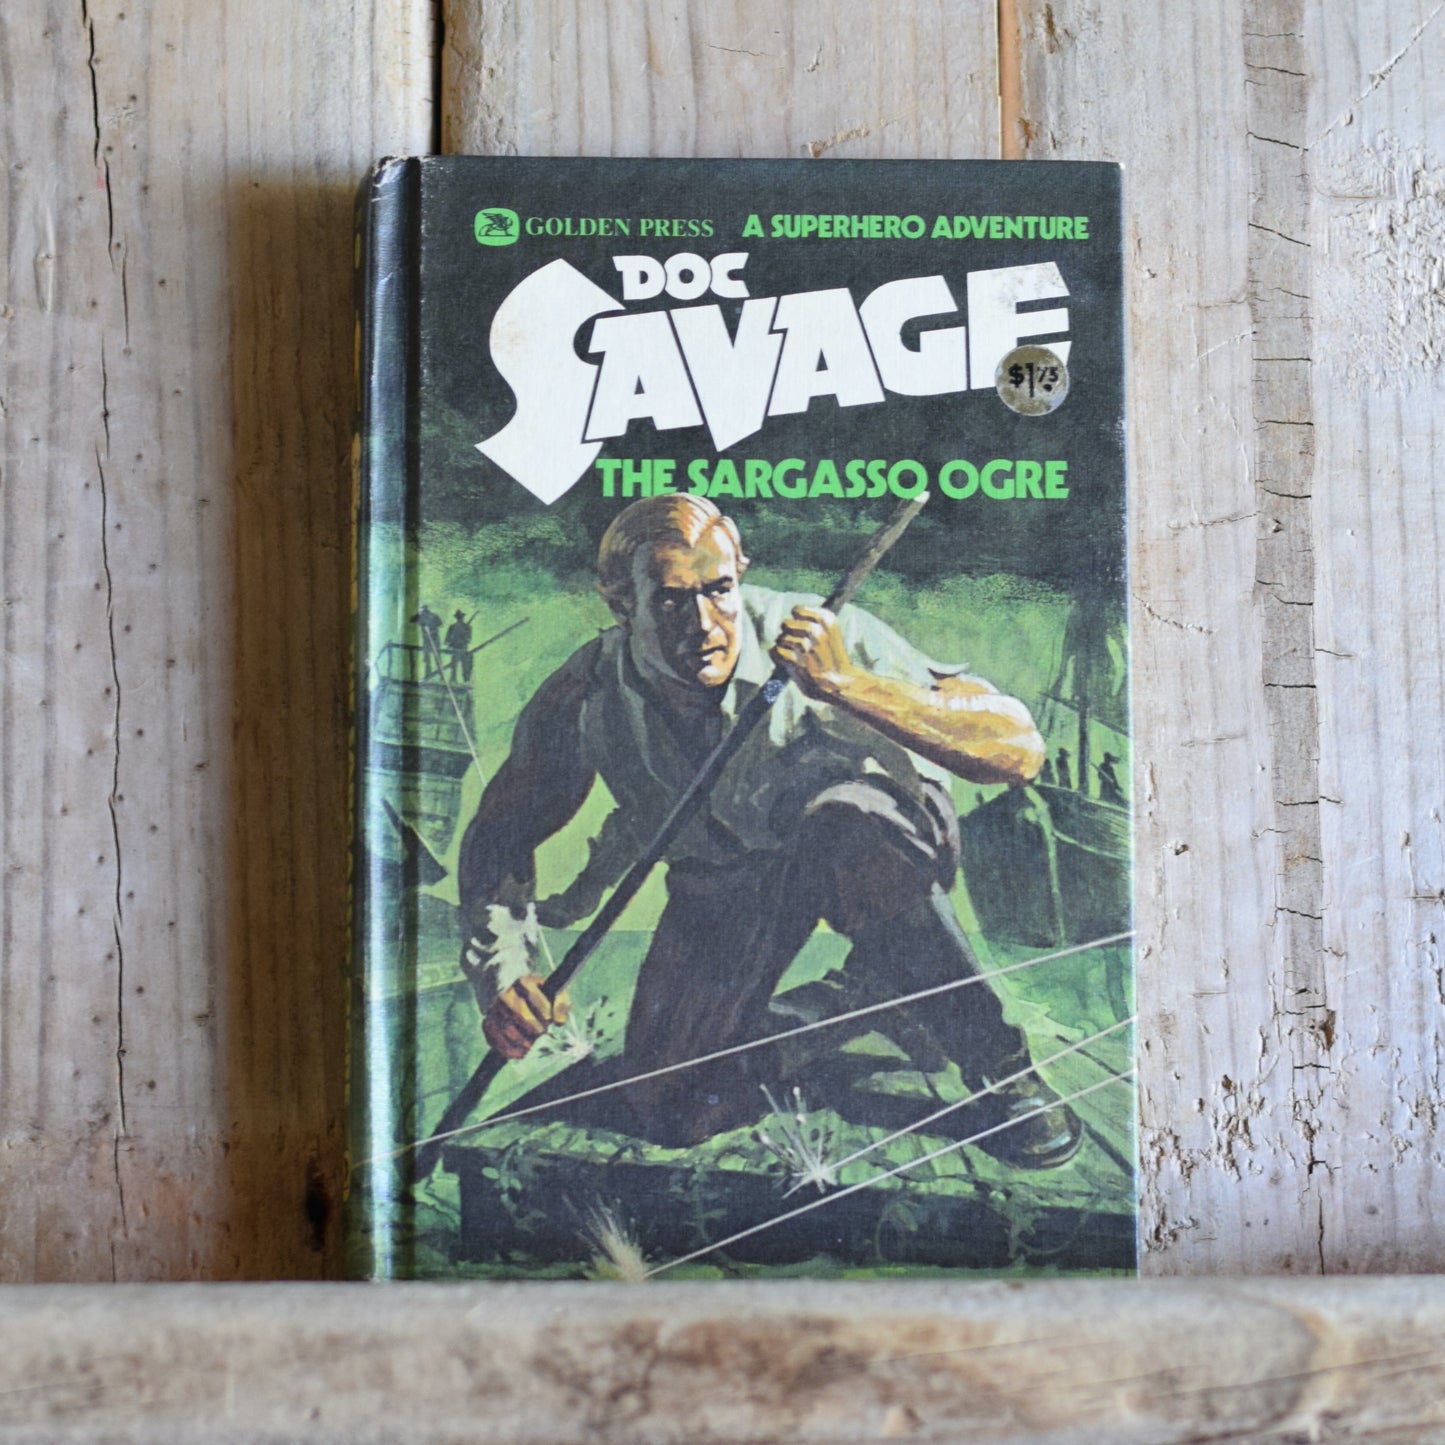 Vintage Fiction Hardback: Kenneth Robeson - Doc Savage, The Sargasso Ogre